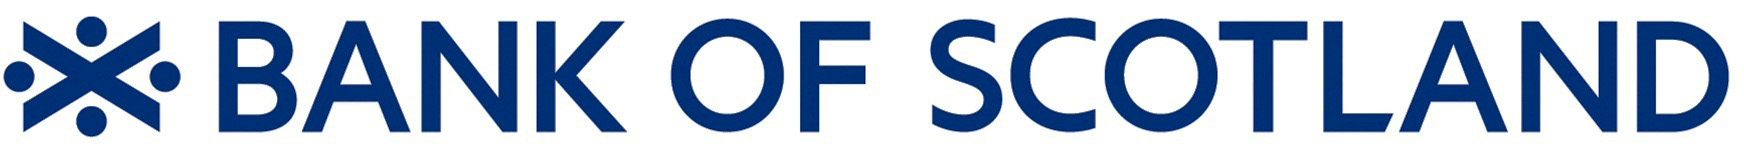 logo-bank-of-scotland-2017-12